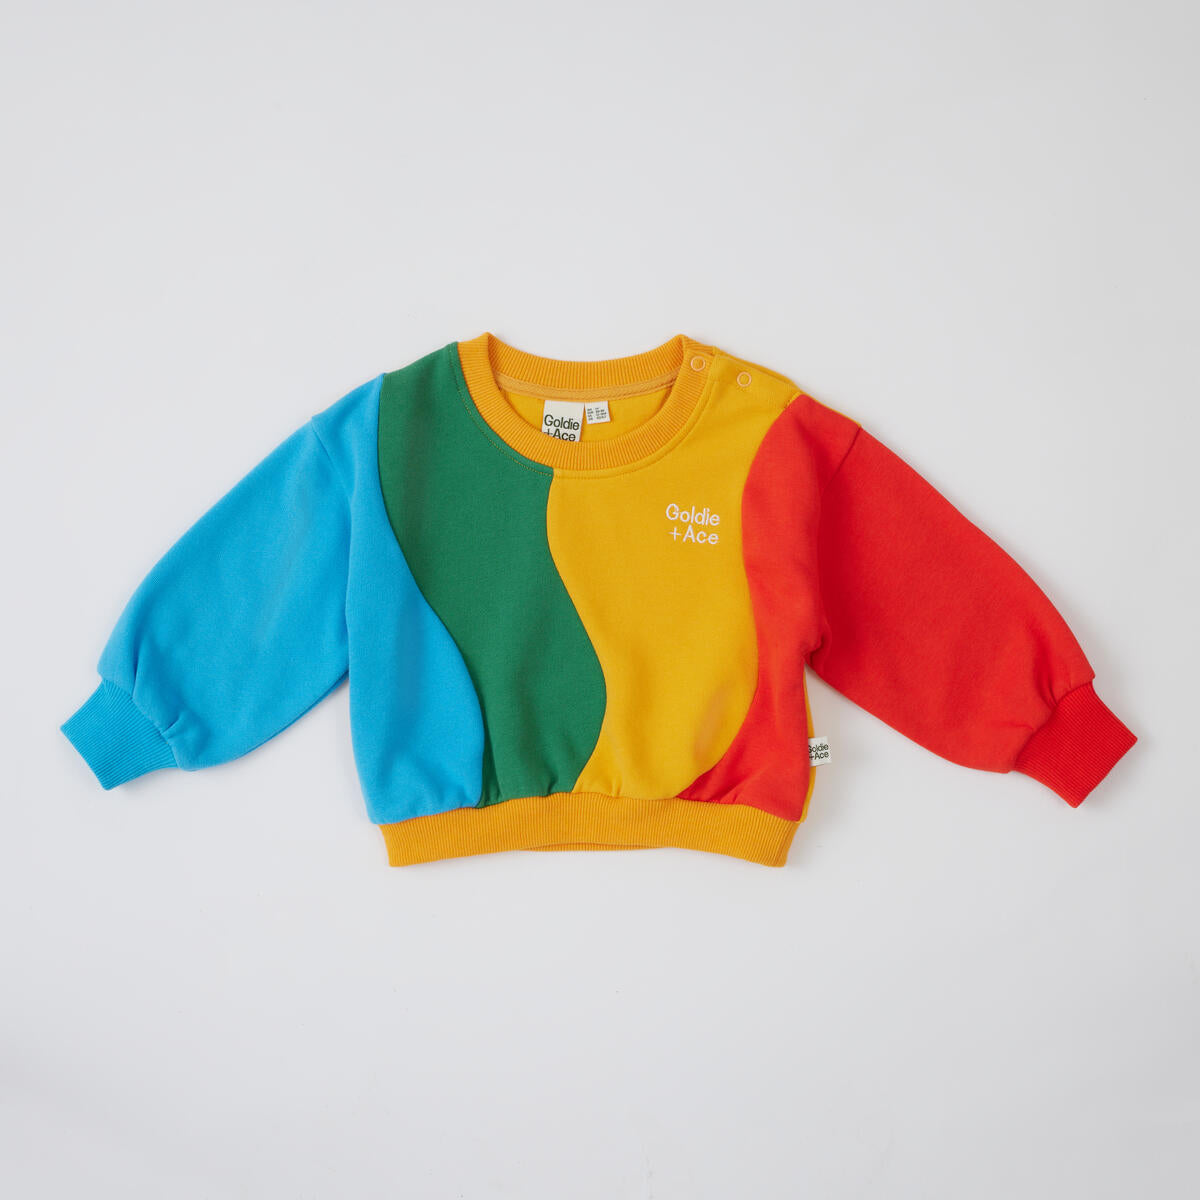 Rio Wave Sweater - Primary Multi